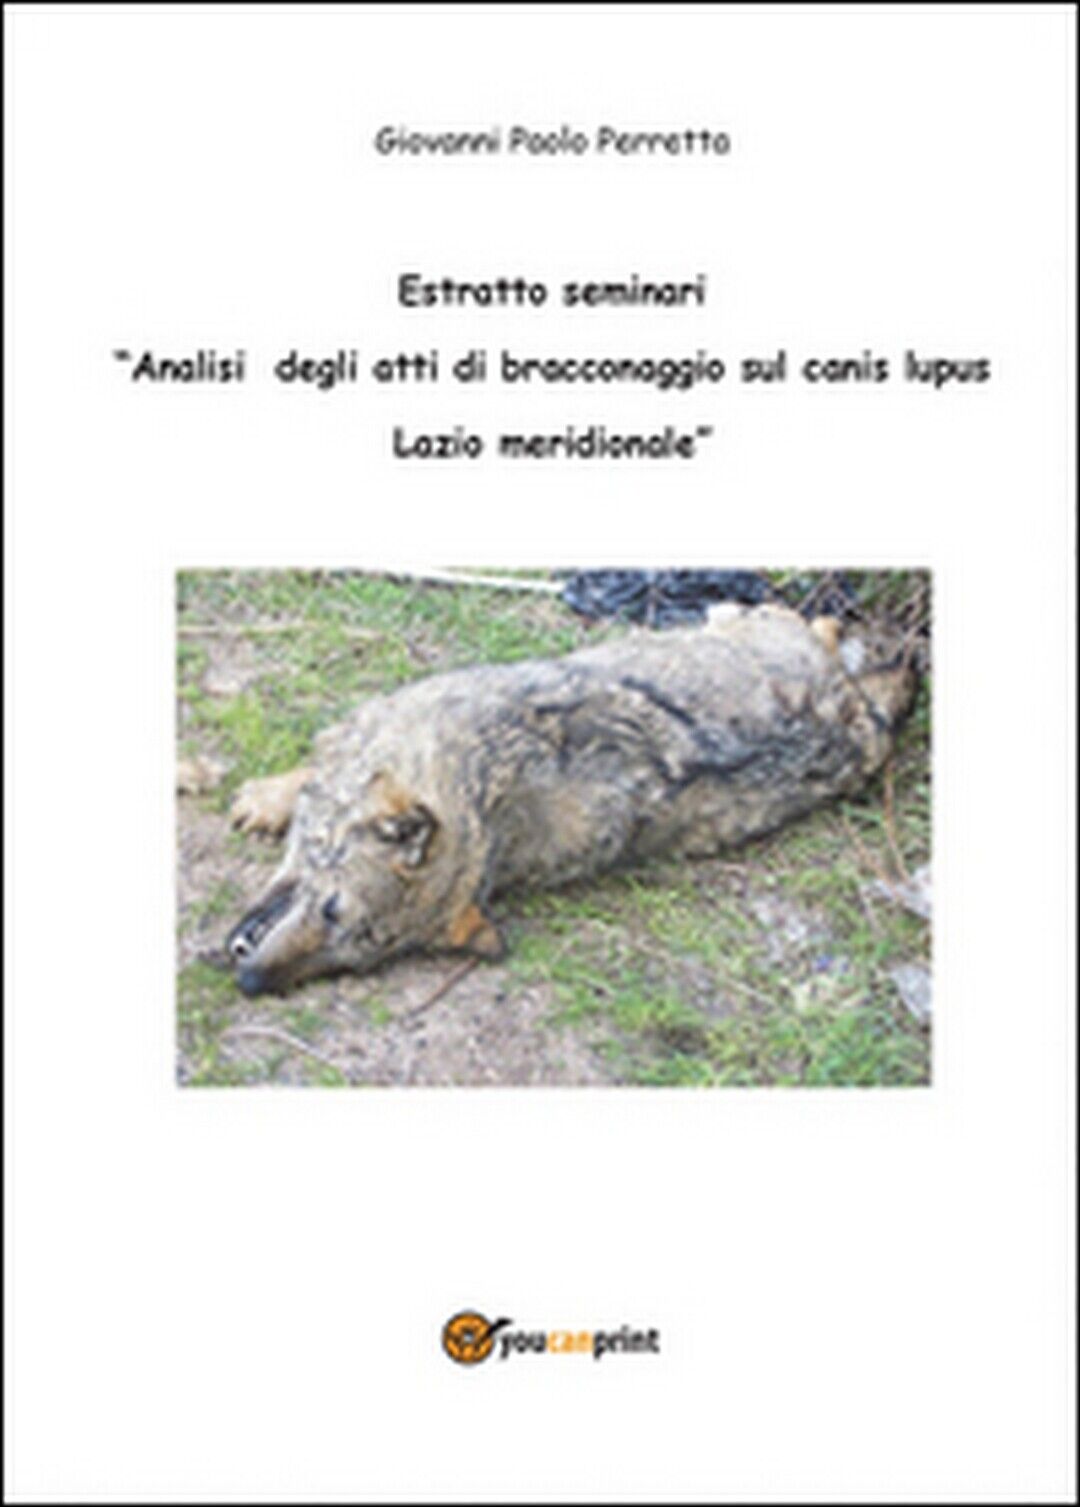 Analisi degli atti di bracconaggio sul Canis lupus Lazio Meridionale. Estratto  libro usato